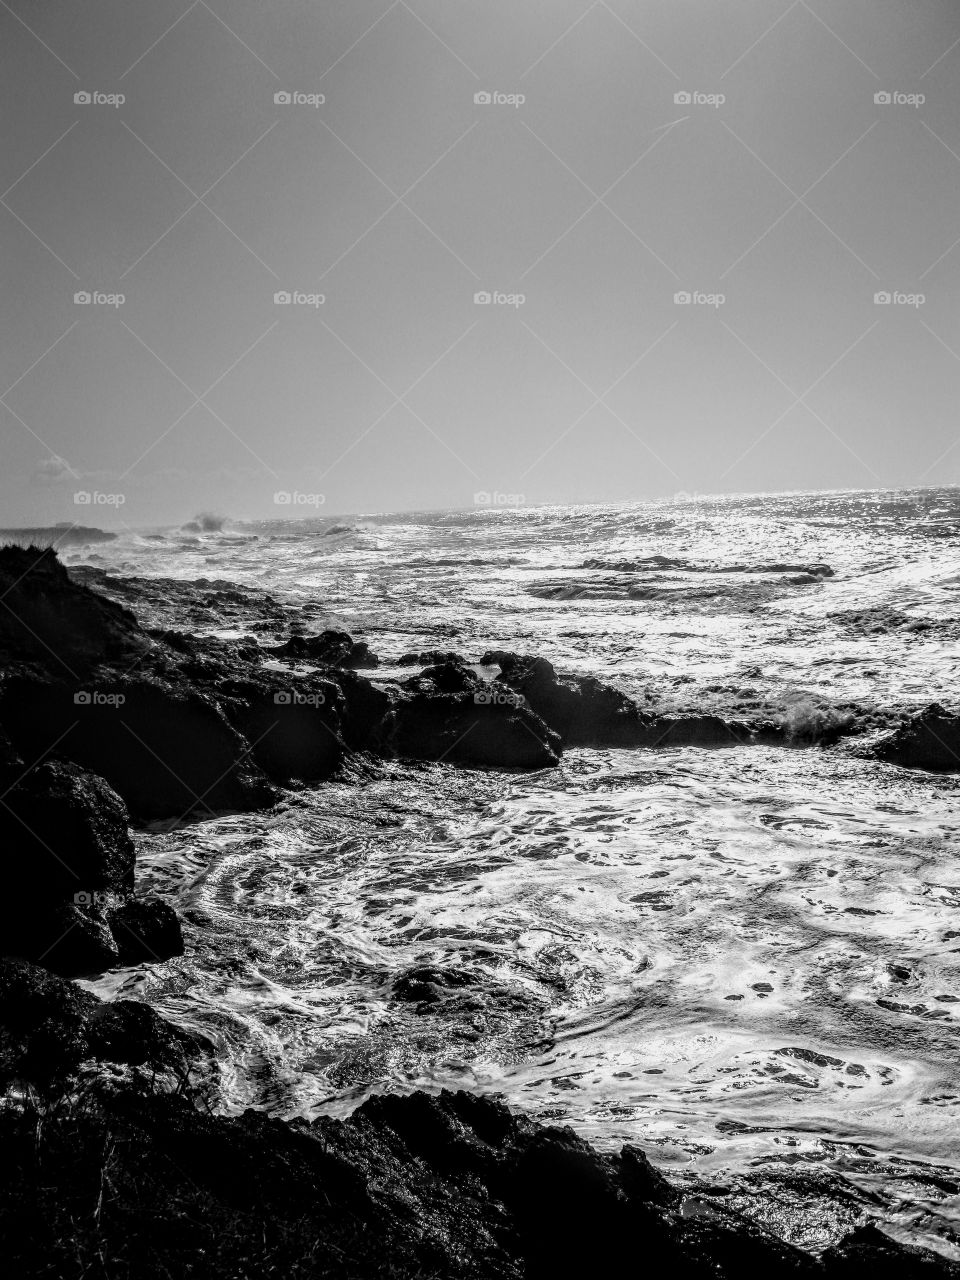 Monochrome Ocean Scene "Swirling Tides"